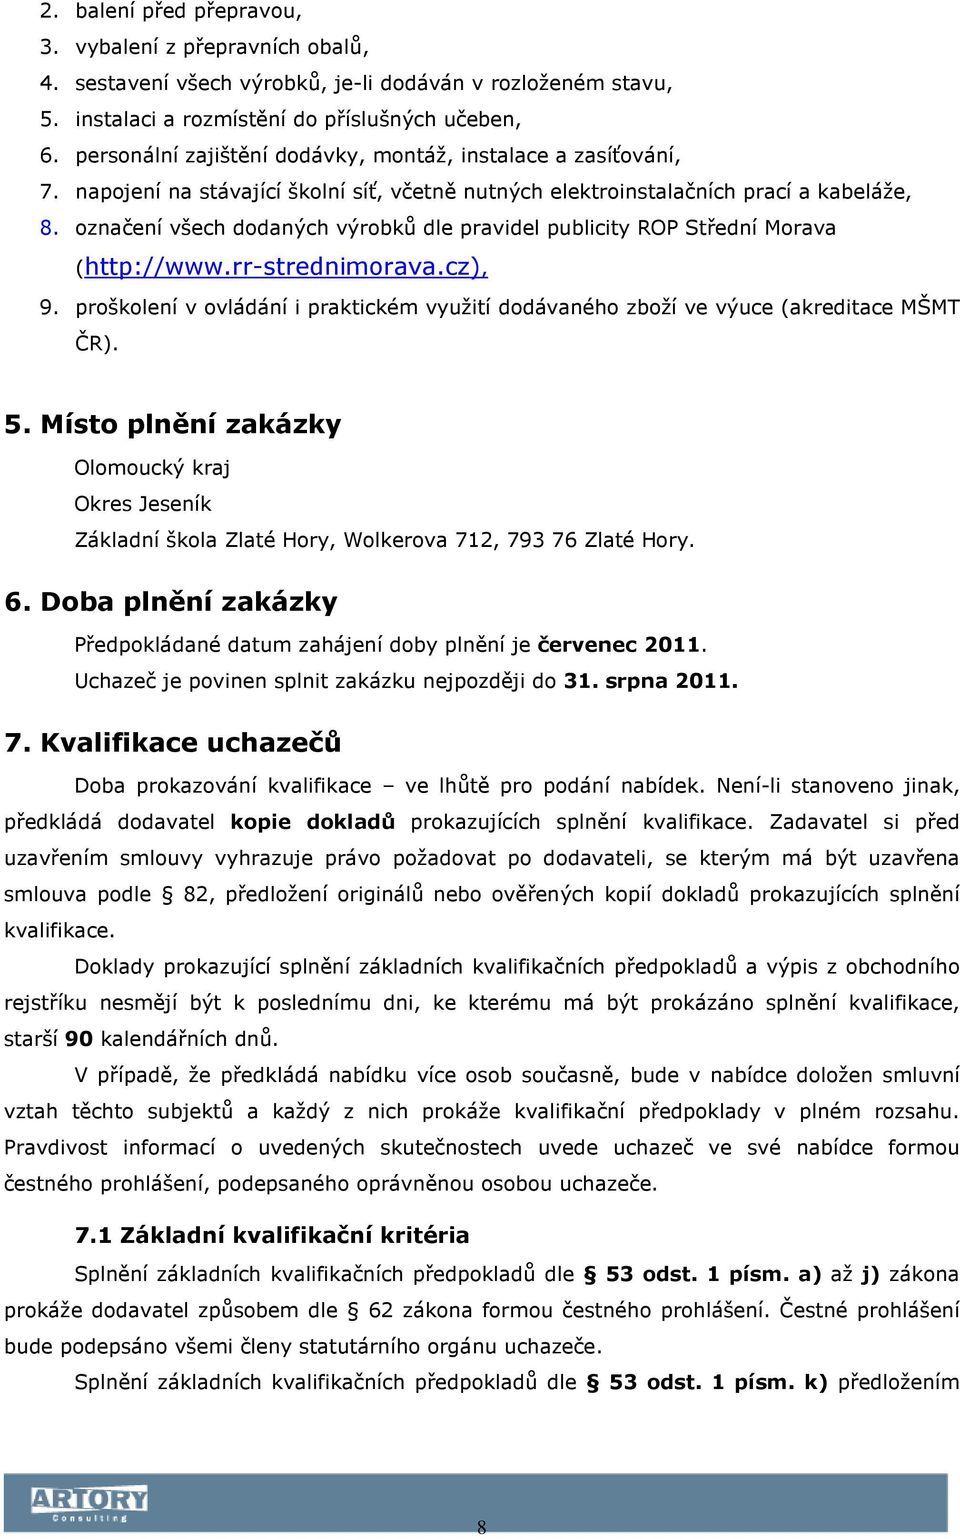 označení všech dodaných výrobků dle pravidel publicity ROP Střední Morava (http://www.rr-strednimorava.cz), 9.